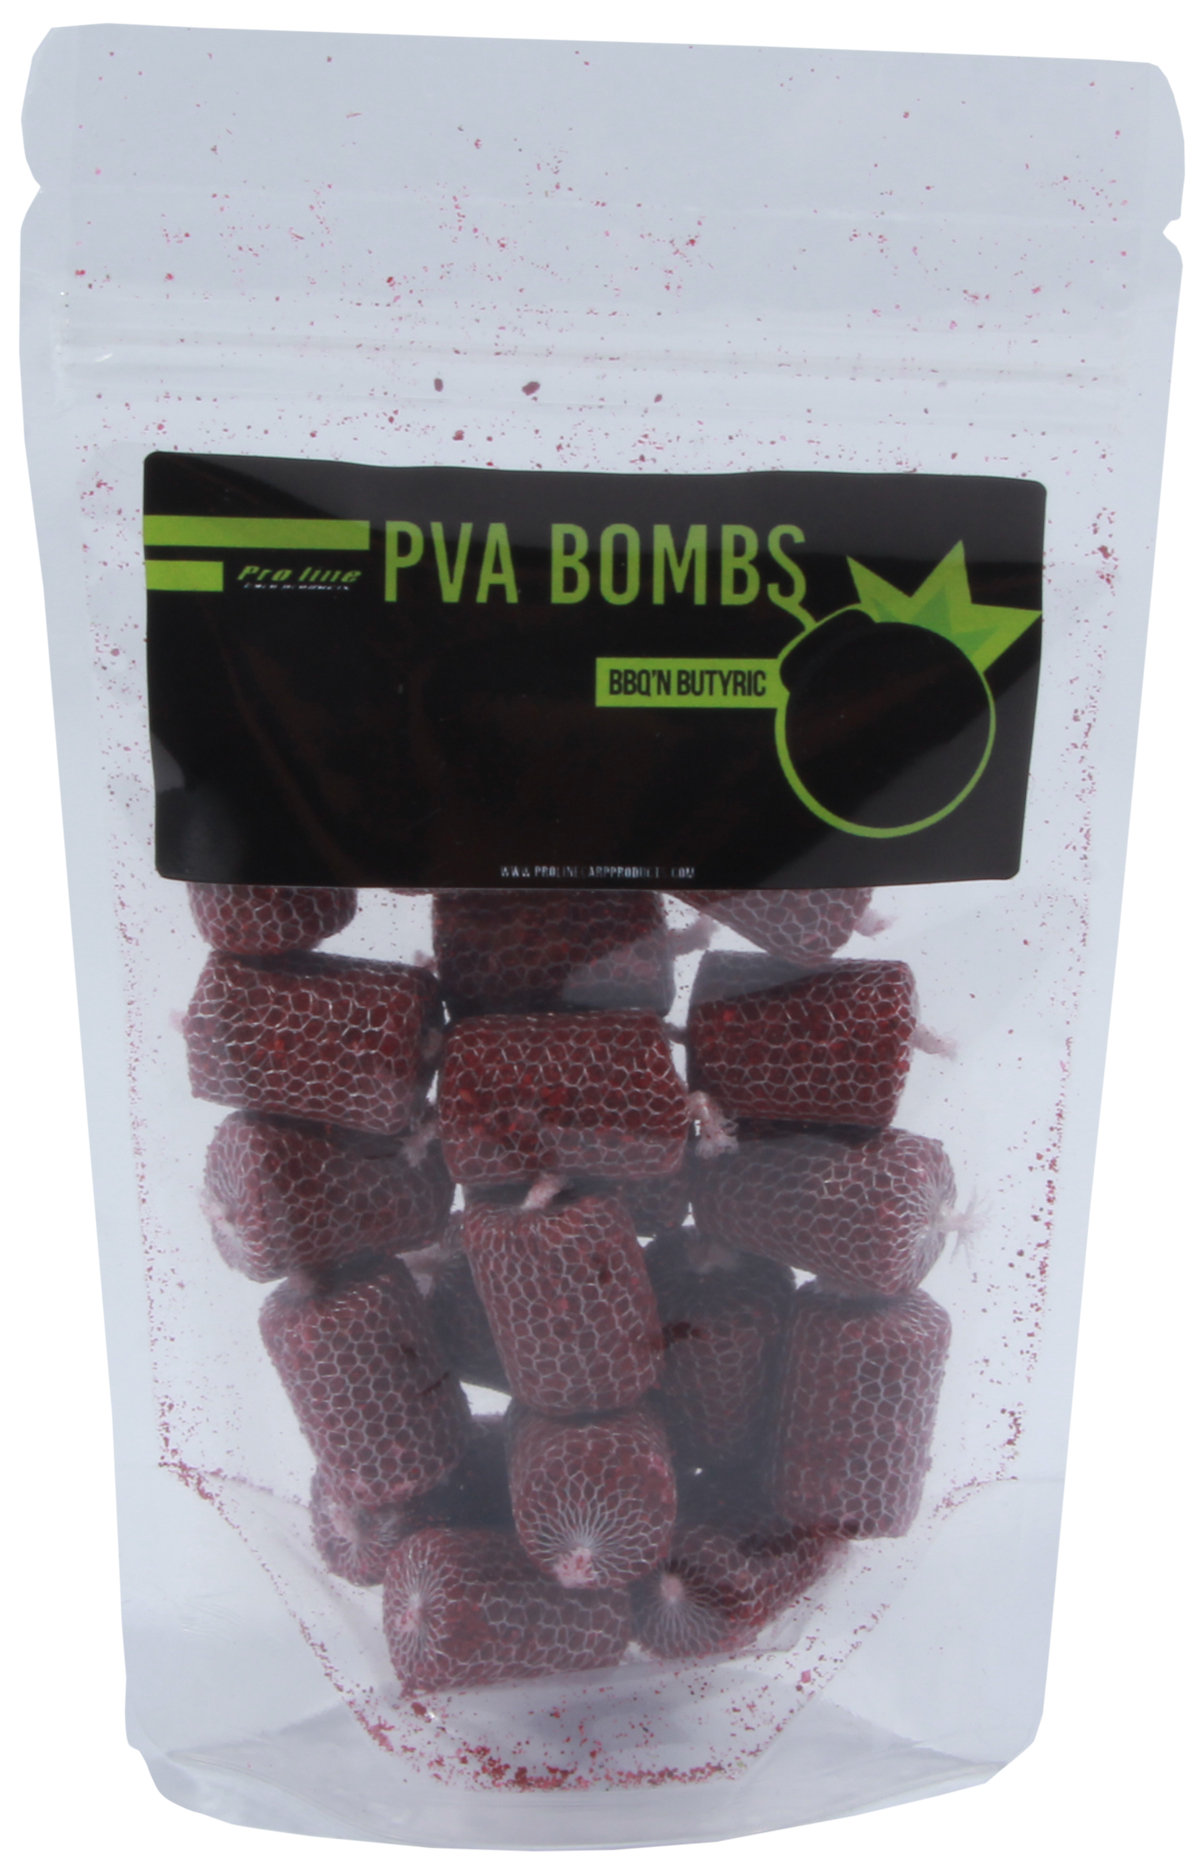 Pro Line PVA Bombs - BBQ 'n Butyric